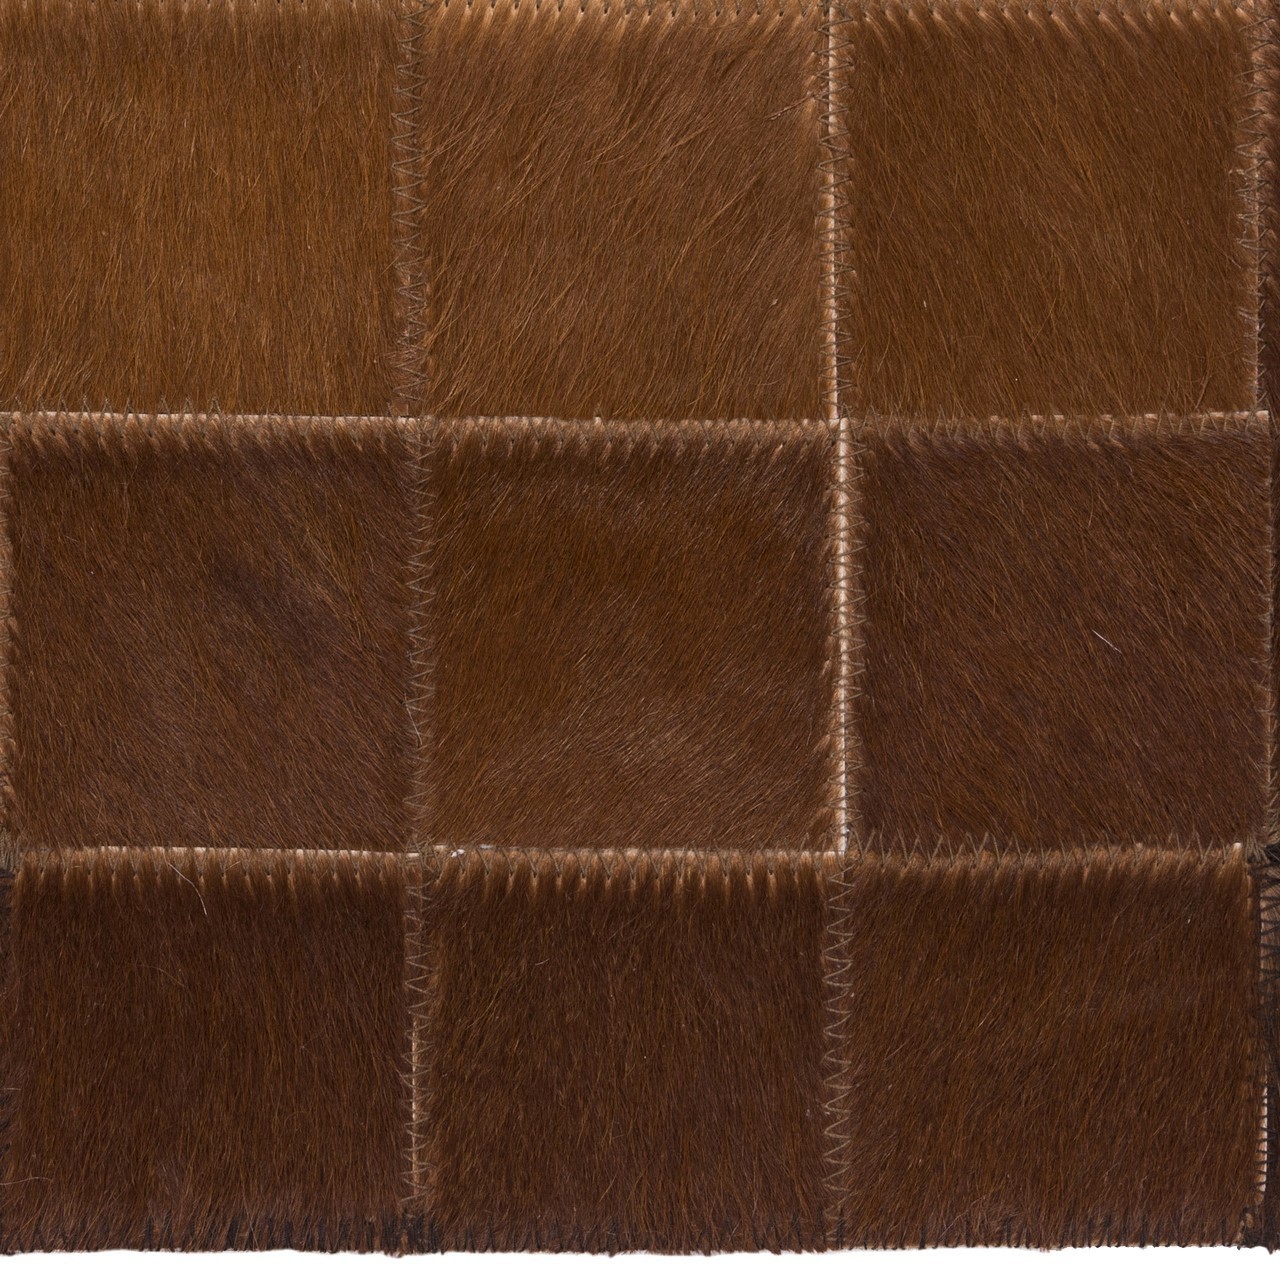 Piel de vaca alfombras patchwork Ref 811071